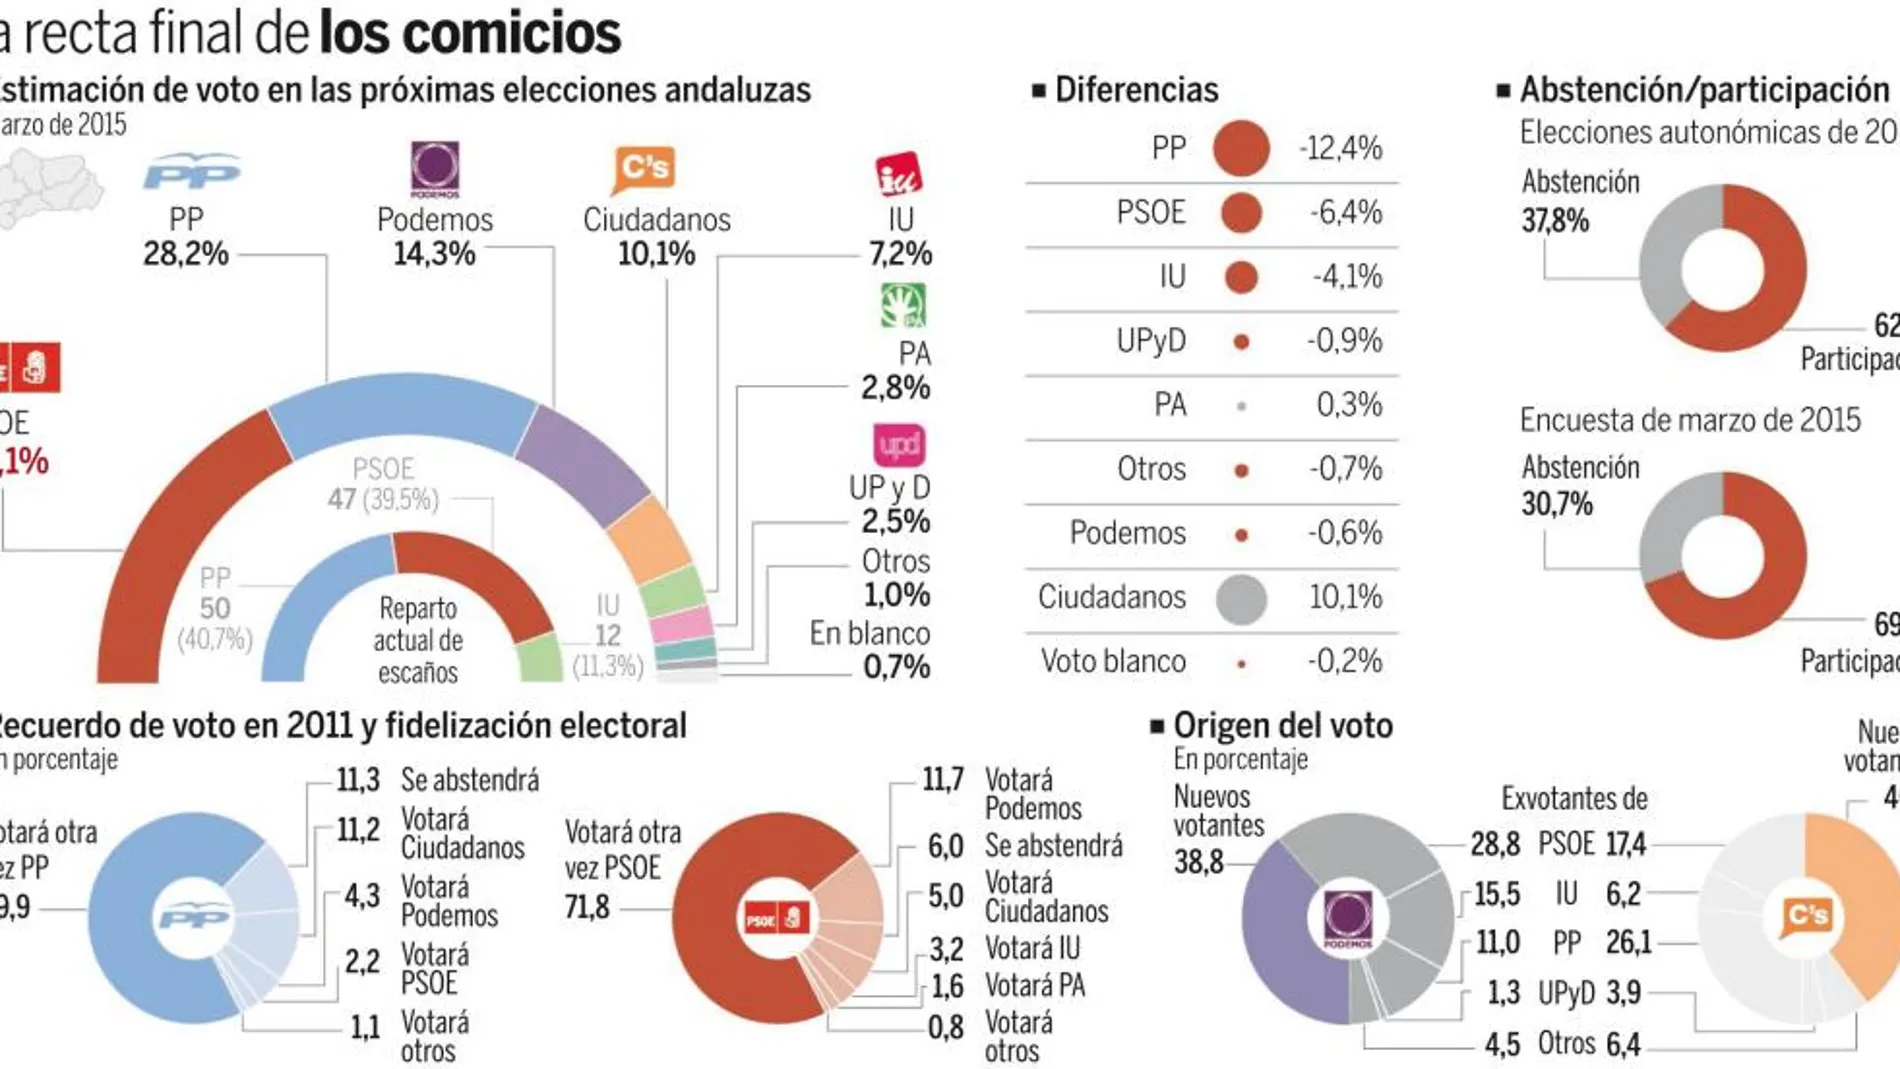 El PP gana 2,5 puntos sobre el CIS andaluz mientras Podemos pierde 5